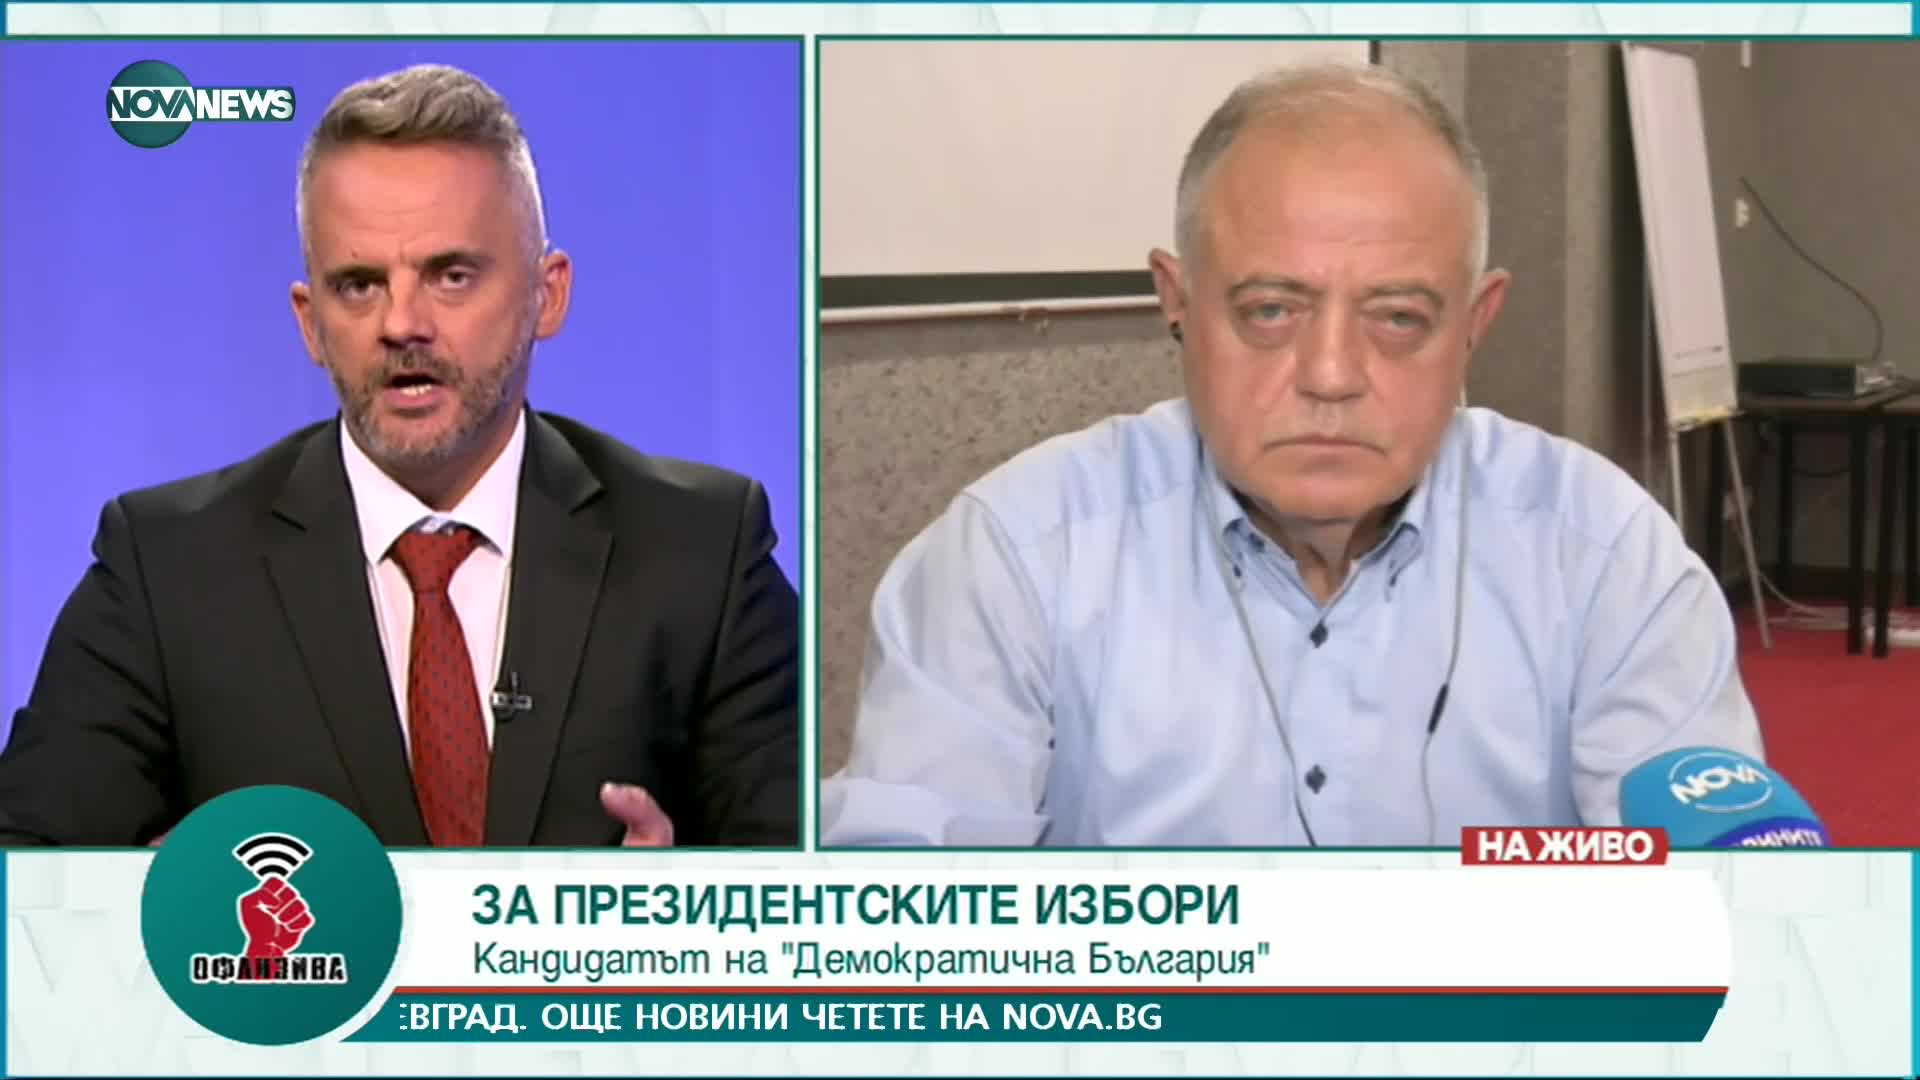 Атанас Атанасов: В „Демократична България” има хора, които могат да се изправят срещу Радев